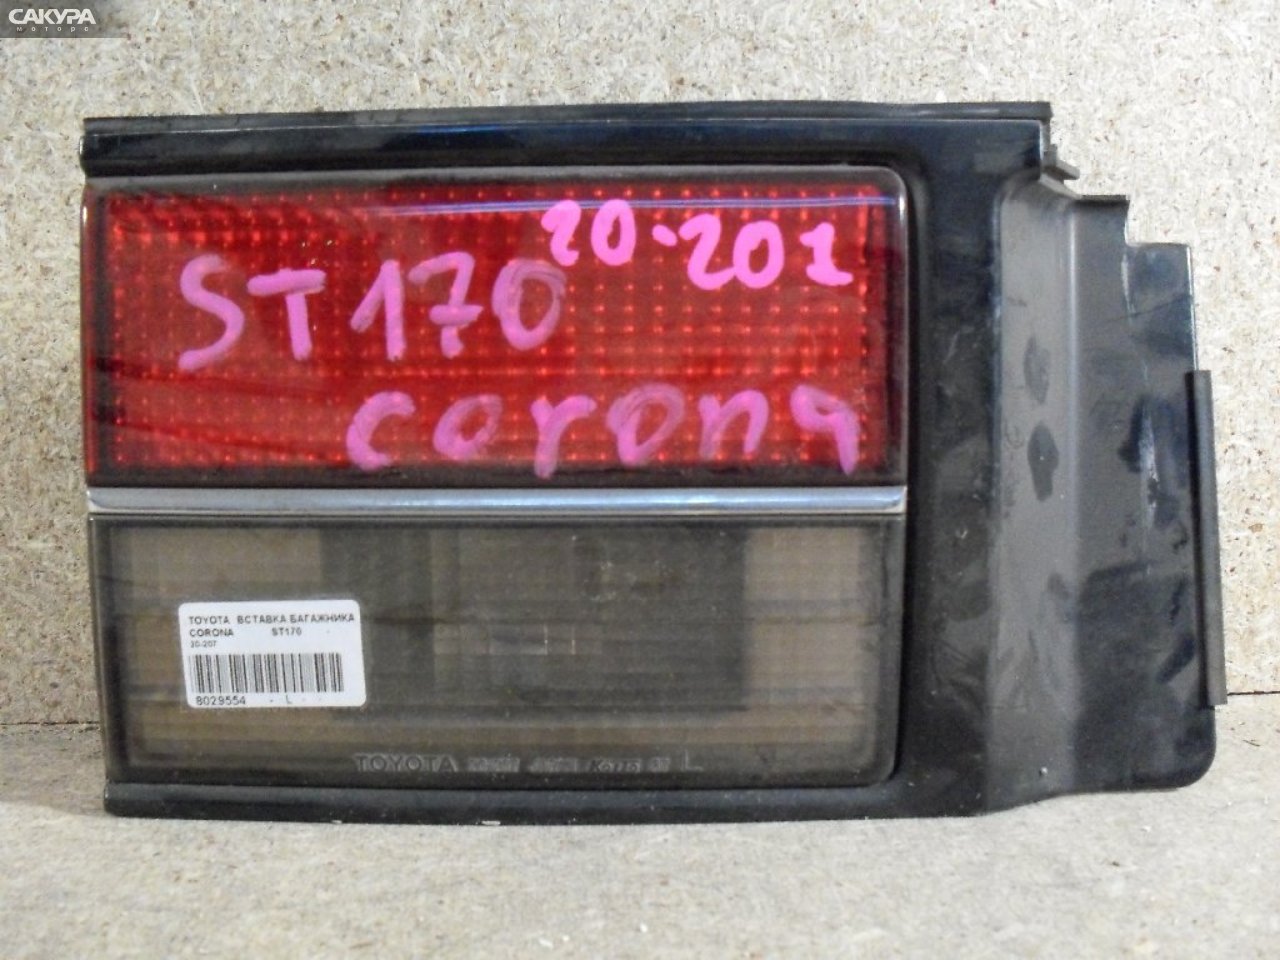 Фонарь вставка багажника левый Toyota Corona ST170 20-207: купить в Сакура Абакан.